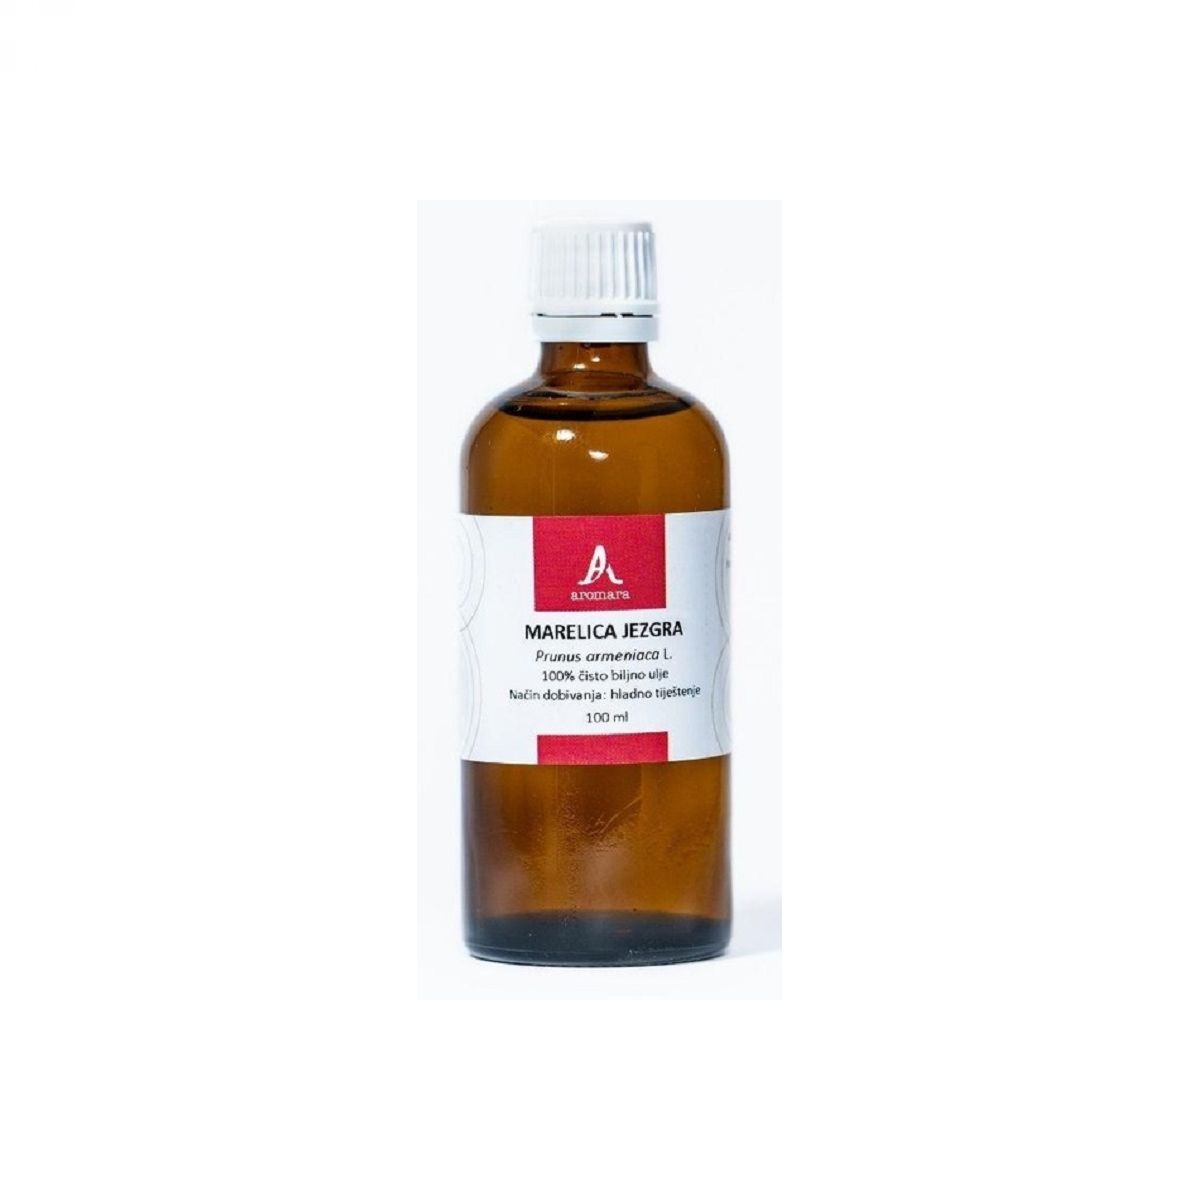 Olje mareličnih koščic (Prunus armeniaca), 100 ml -  AROMARA